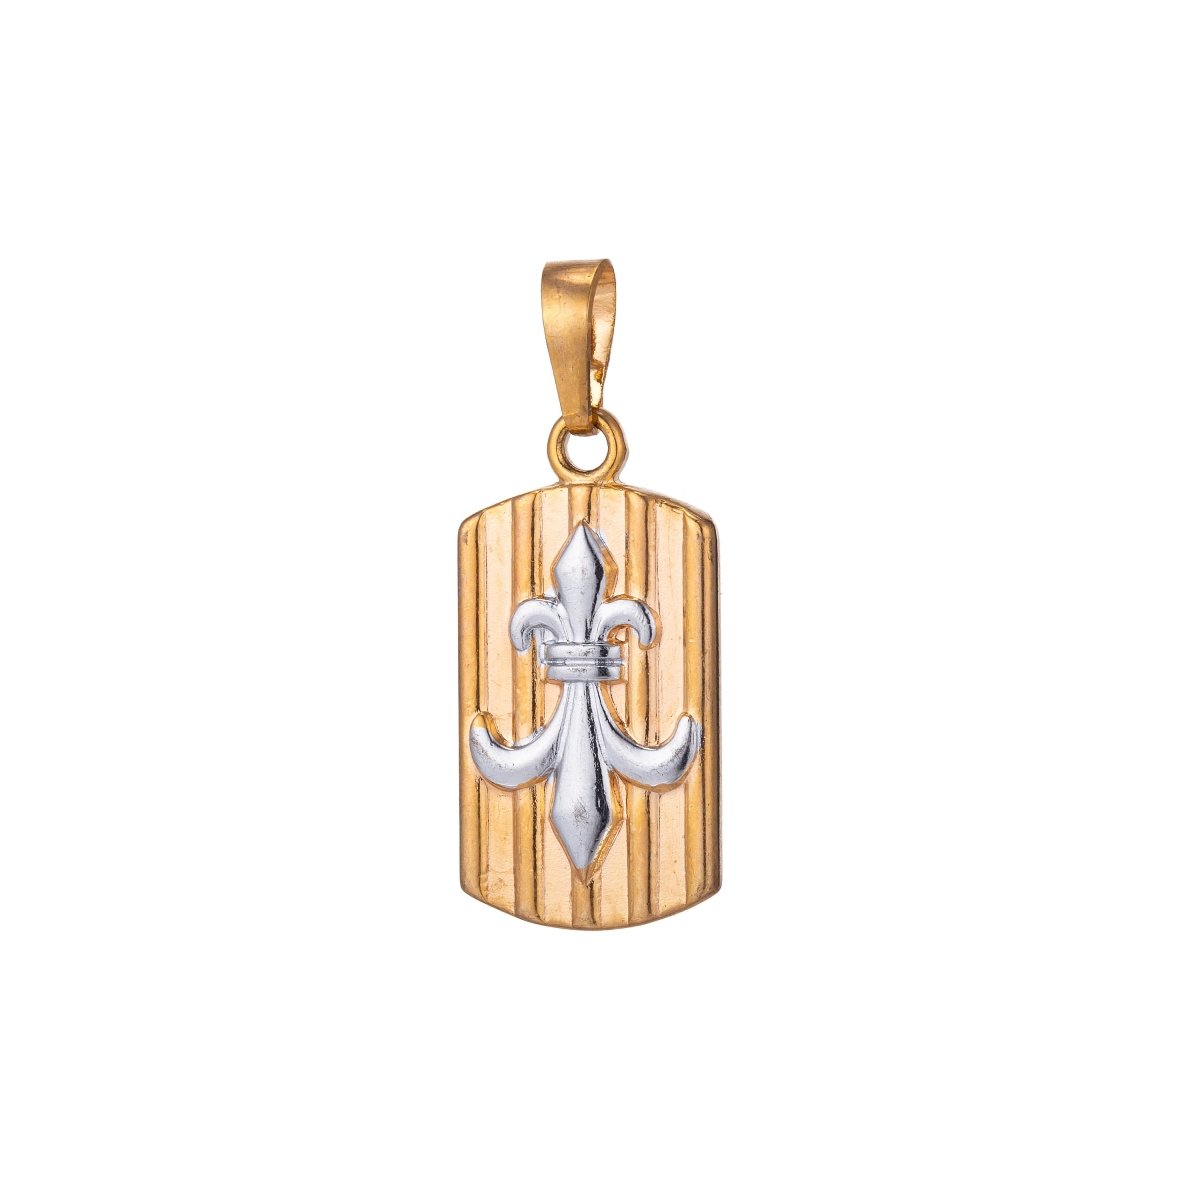 3D 18K Gold Petite Fleur de Lis Charm New Orleans Saints Logo Pendant Lousiana For Layering Necklace Gift Making Military Tag Pendant H-857 - DLUXCA